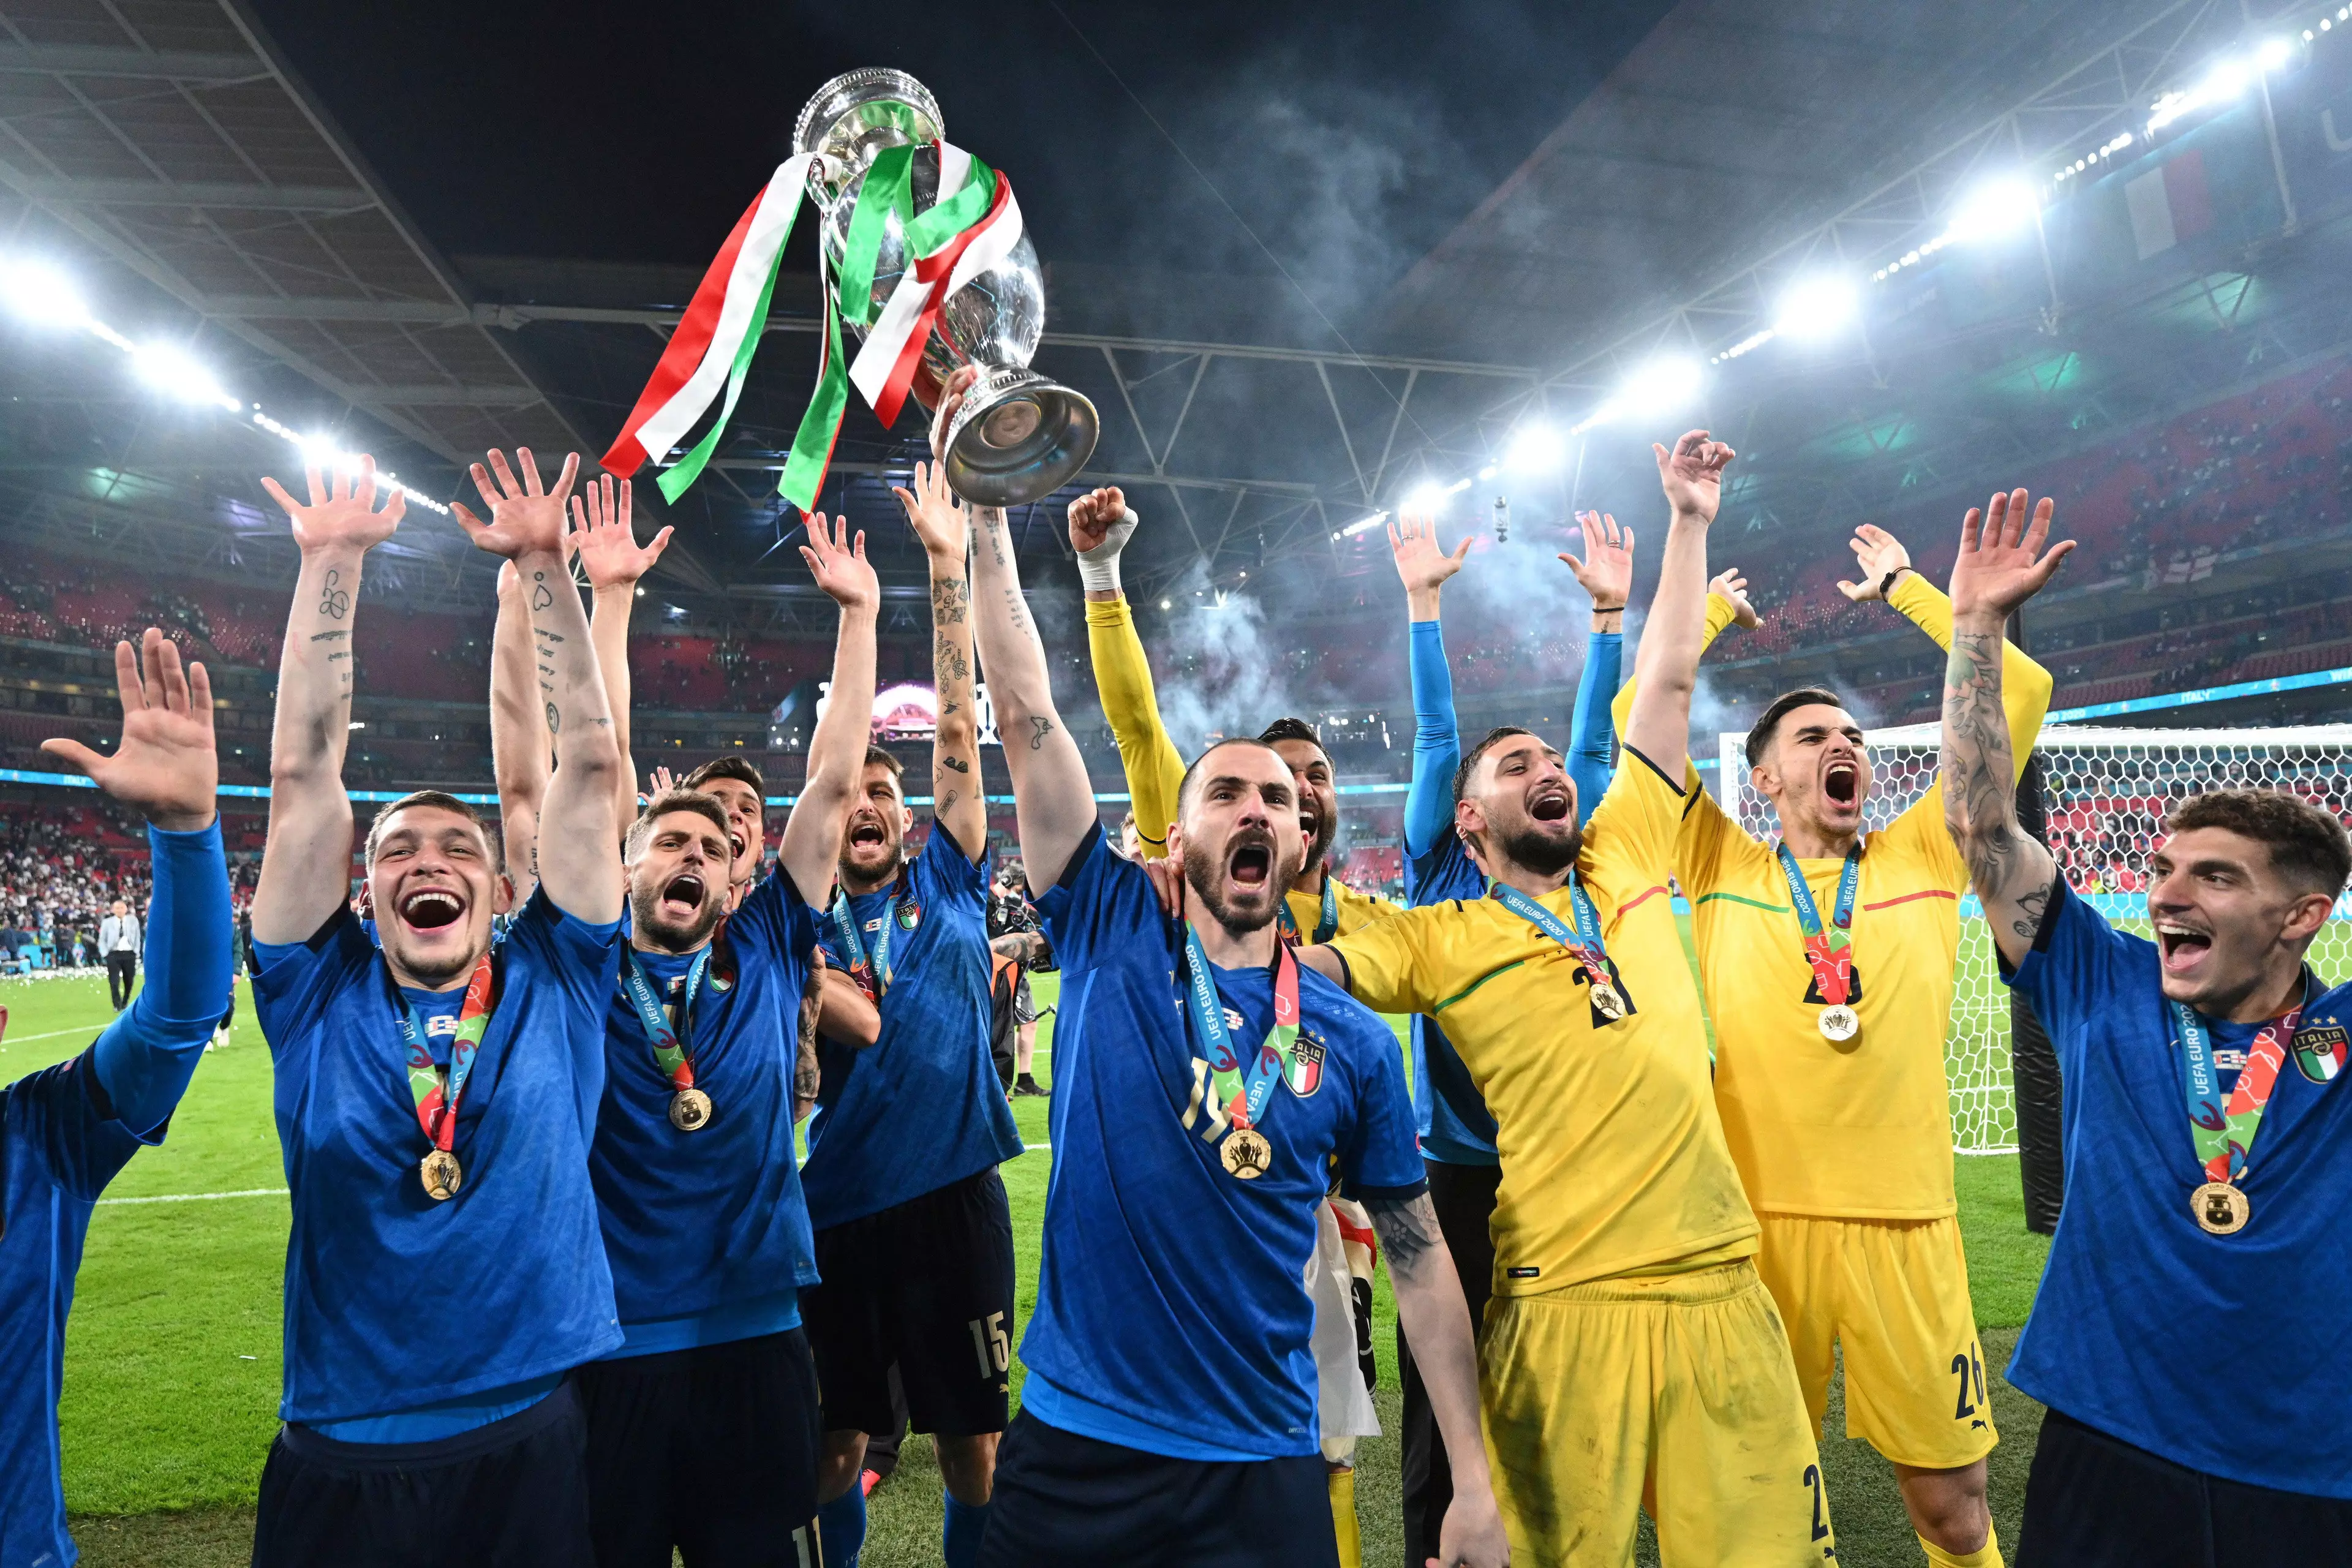 Italy won the Euros at Wembley last summer. Image: PA Images